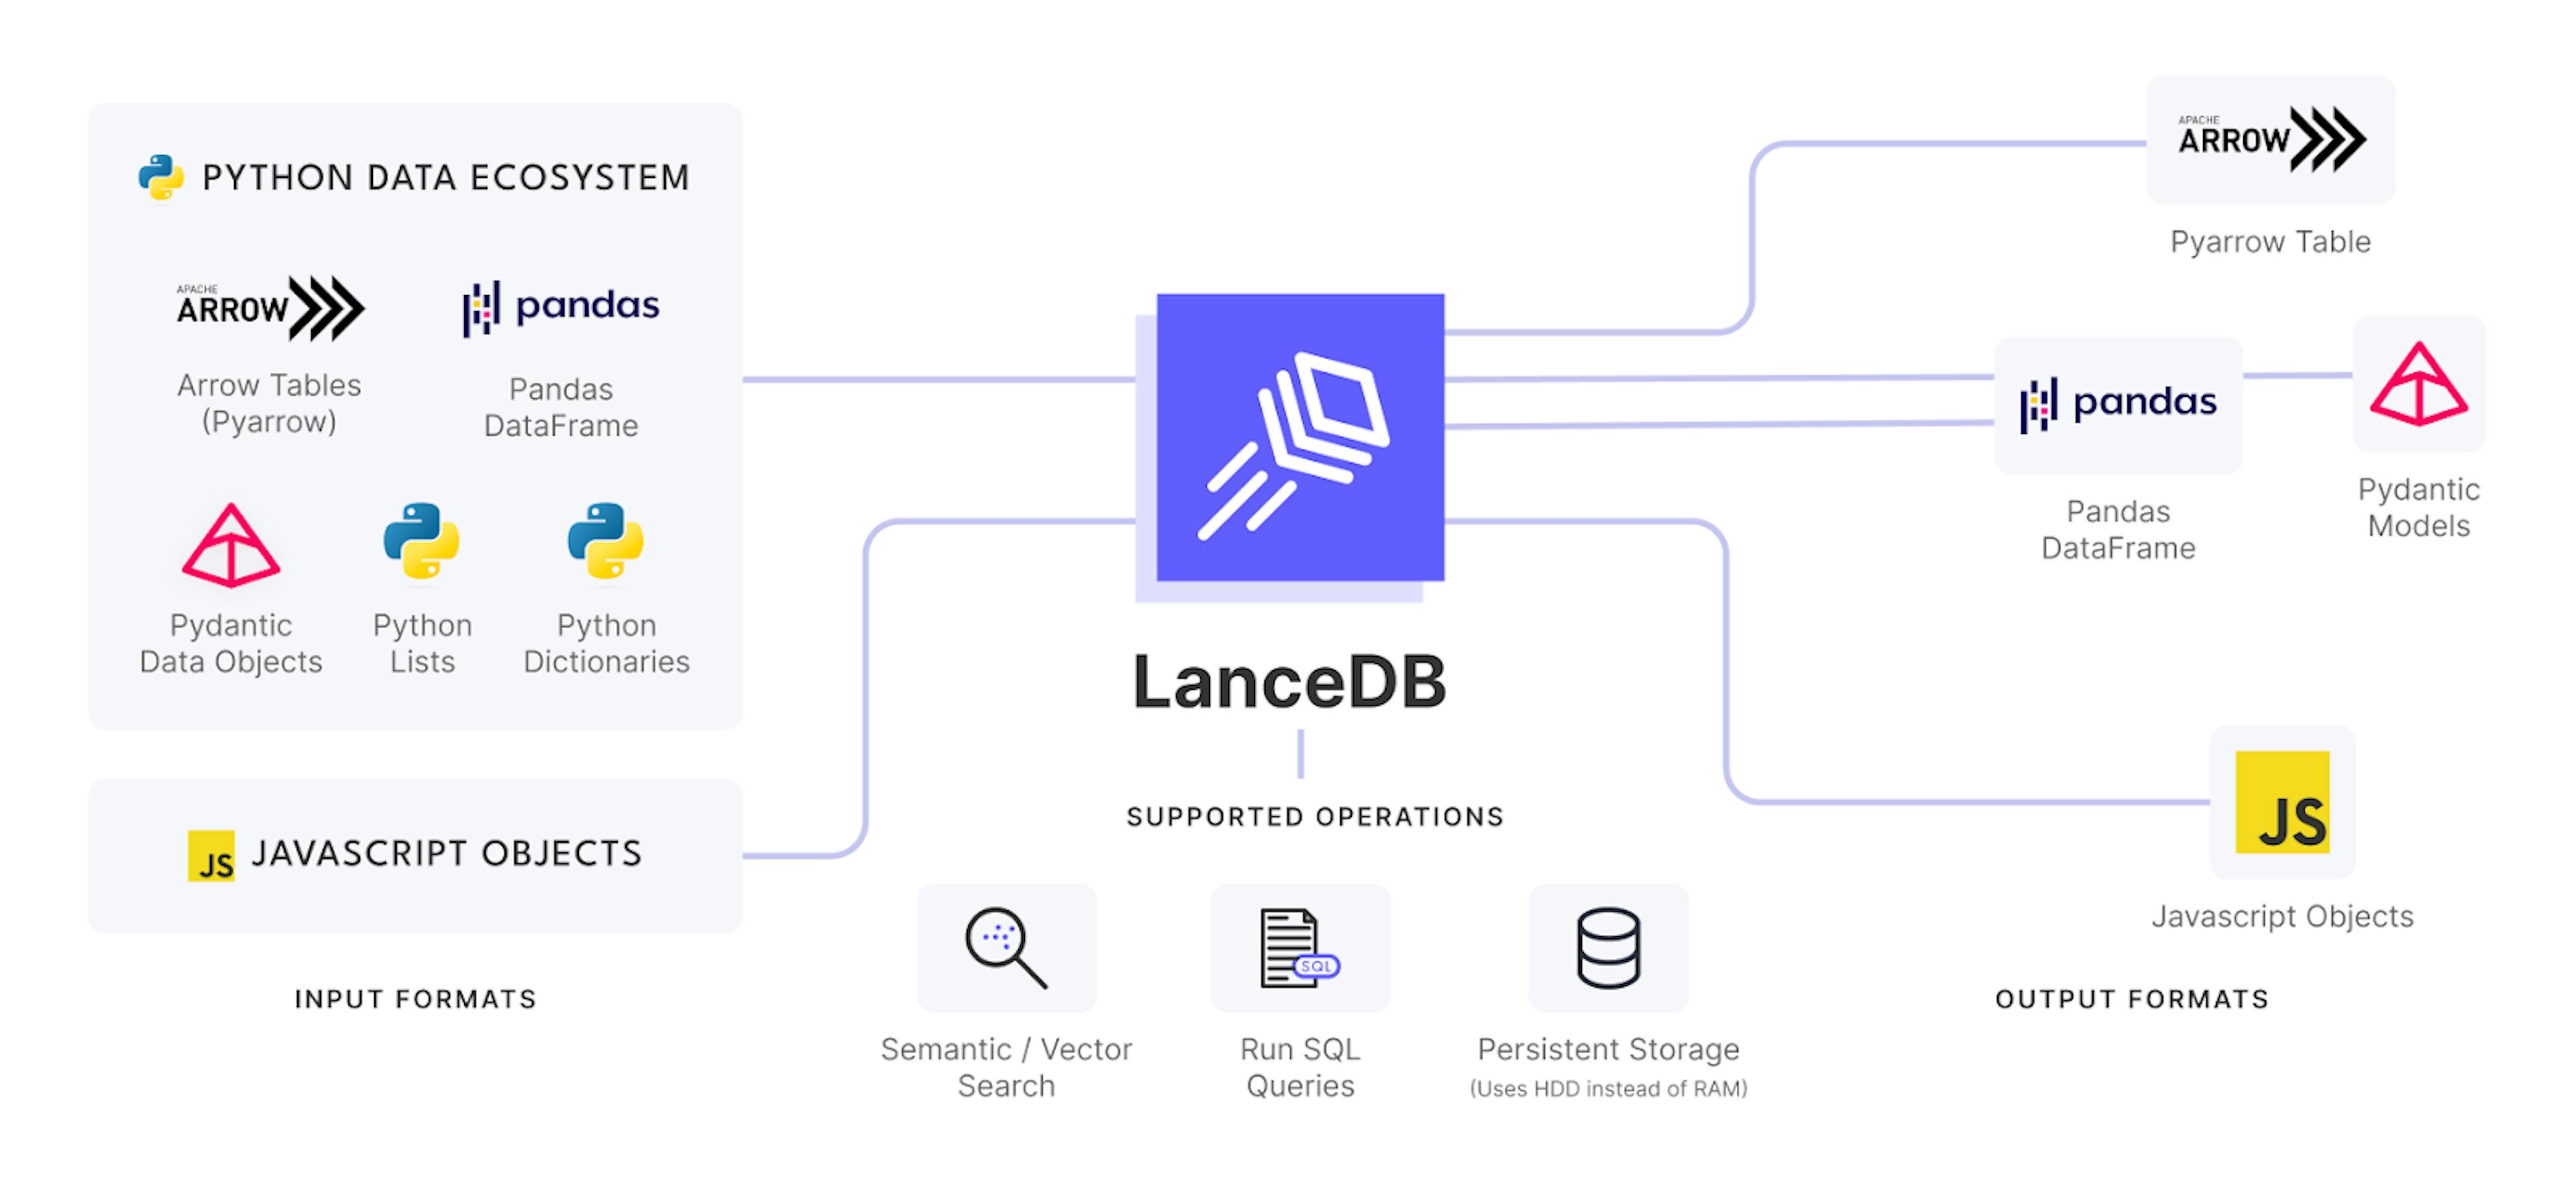 LanceDB ecosystem